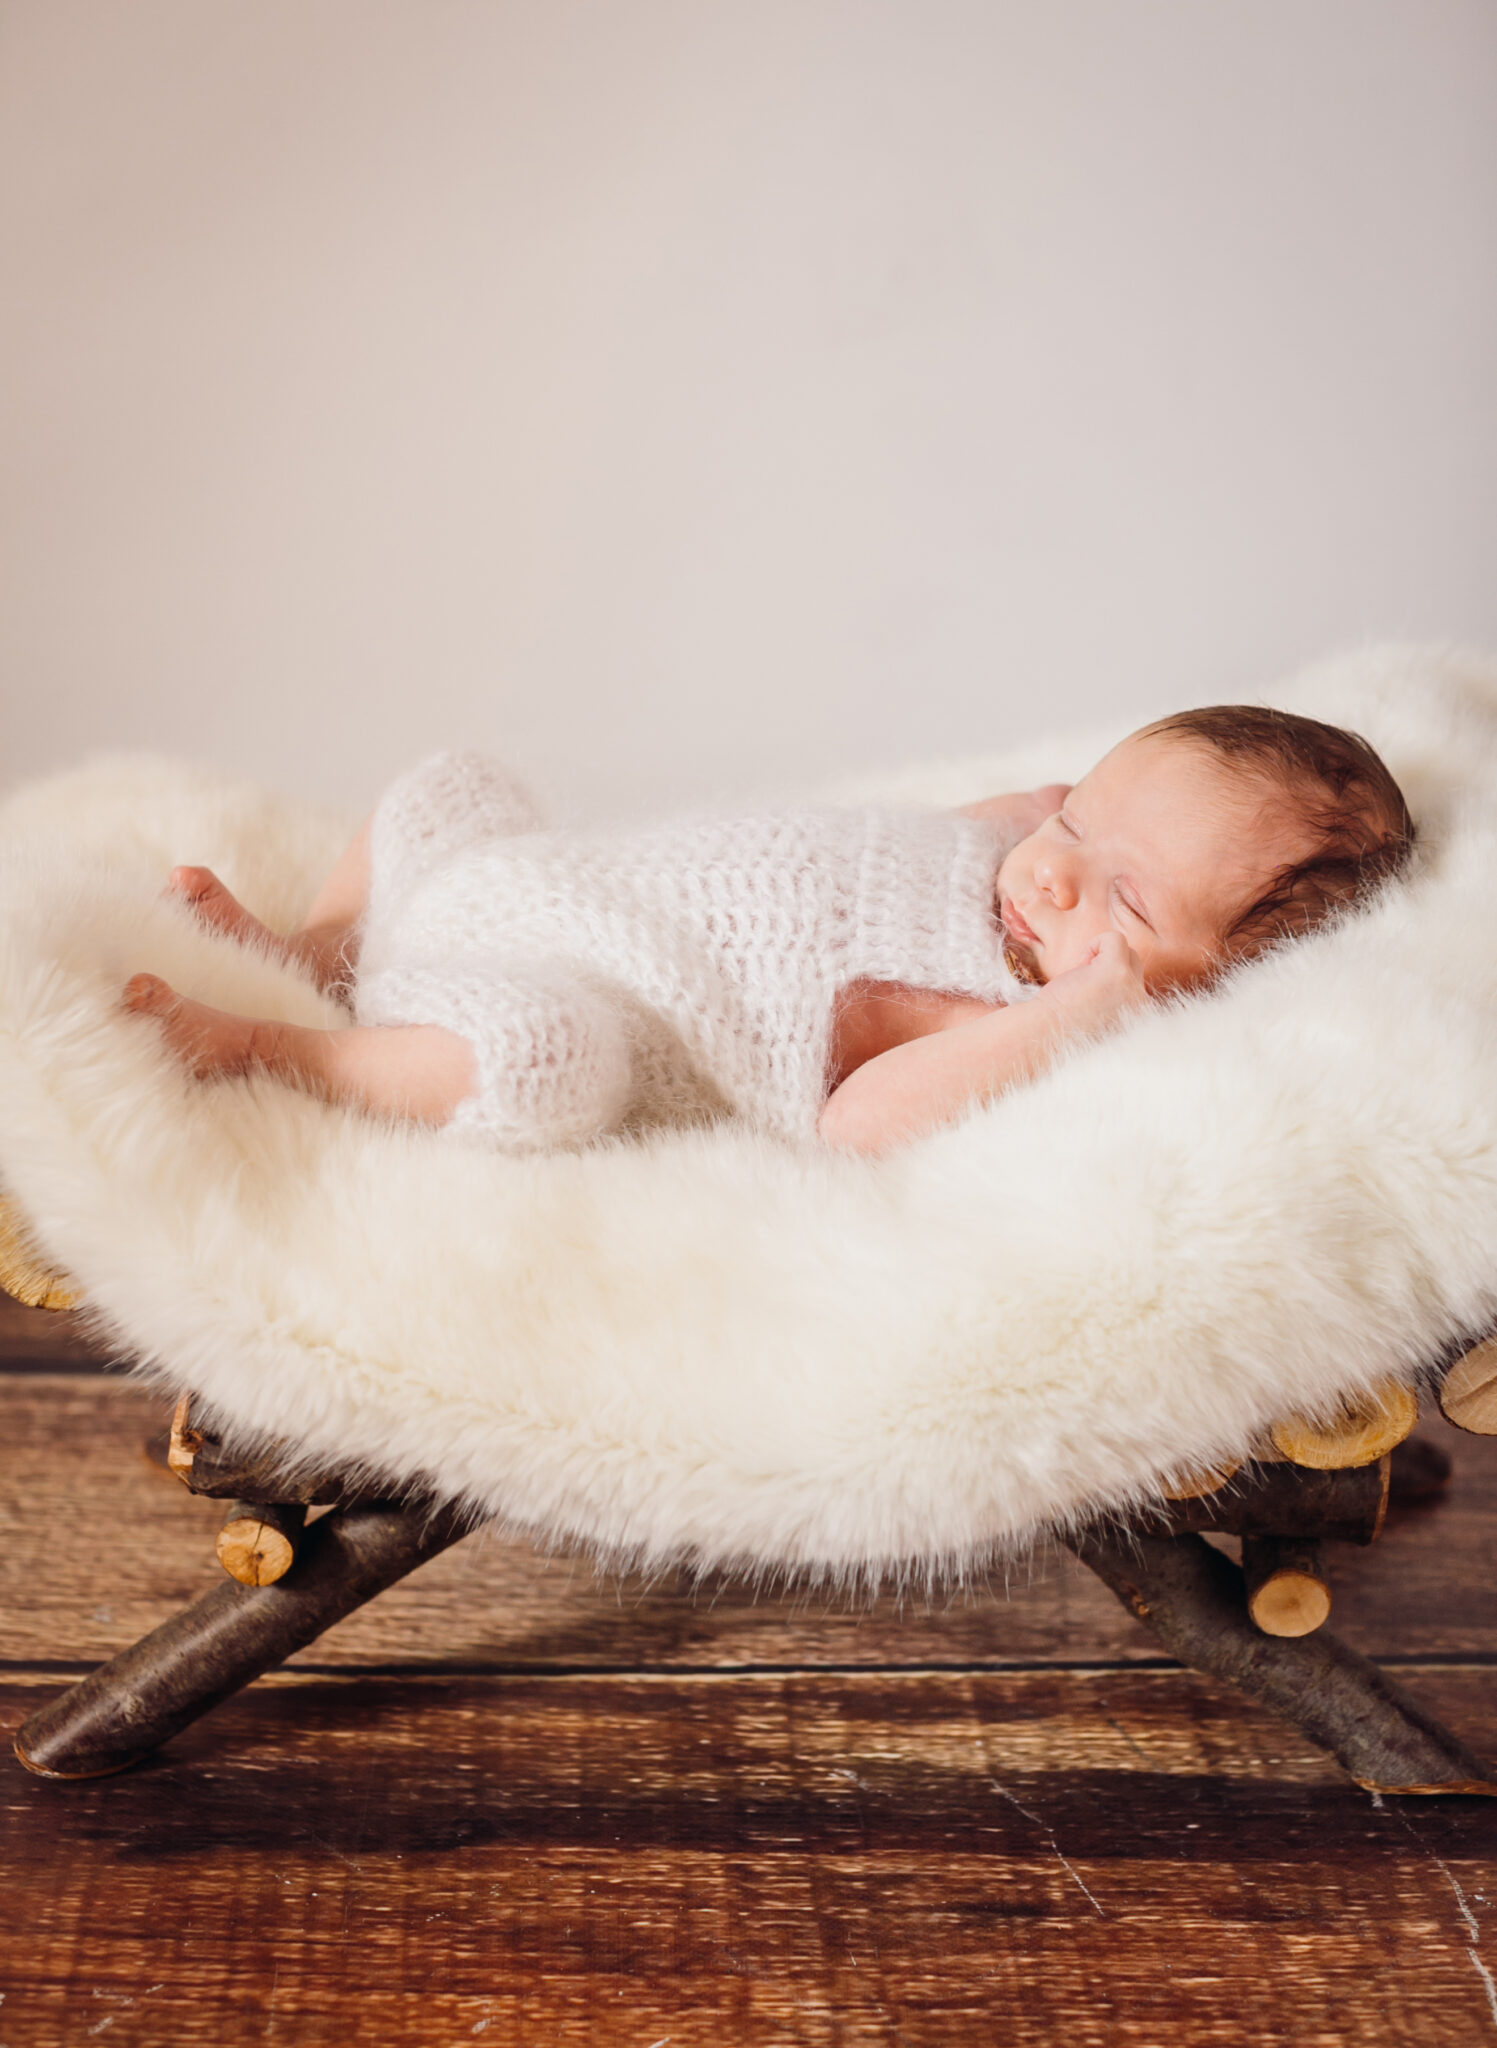 Newborn care guide, newborn tips and tricks